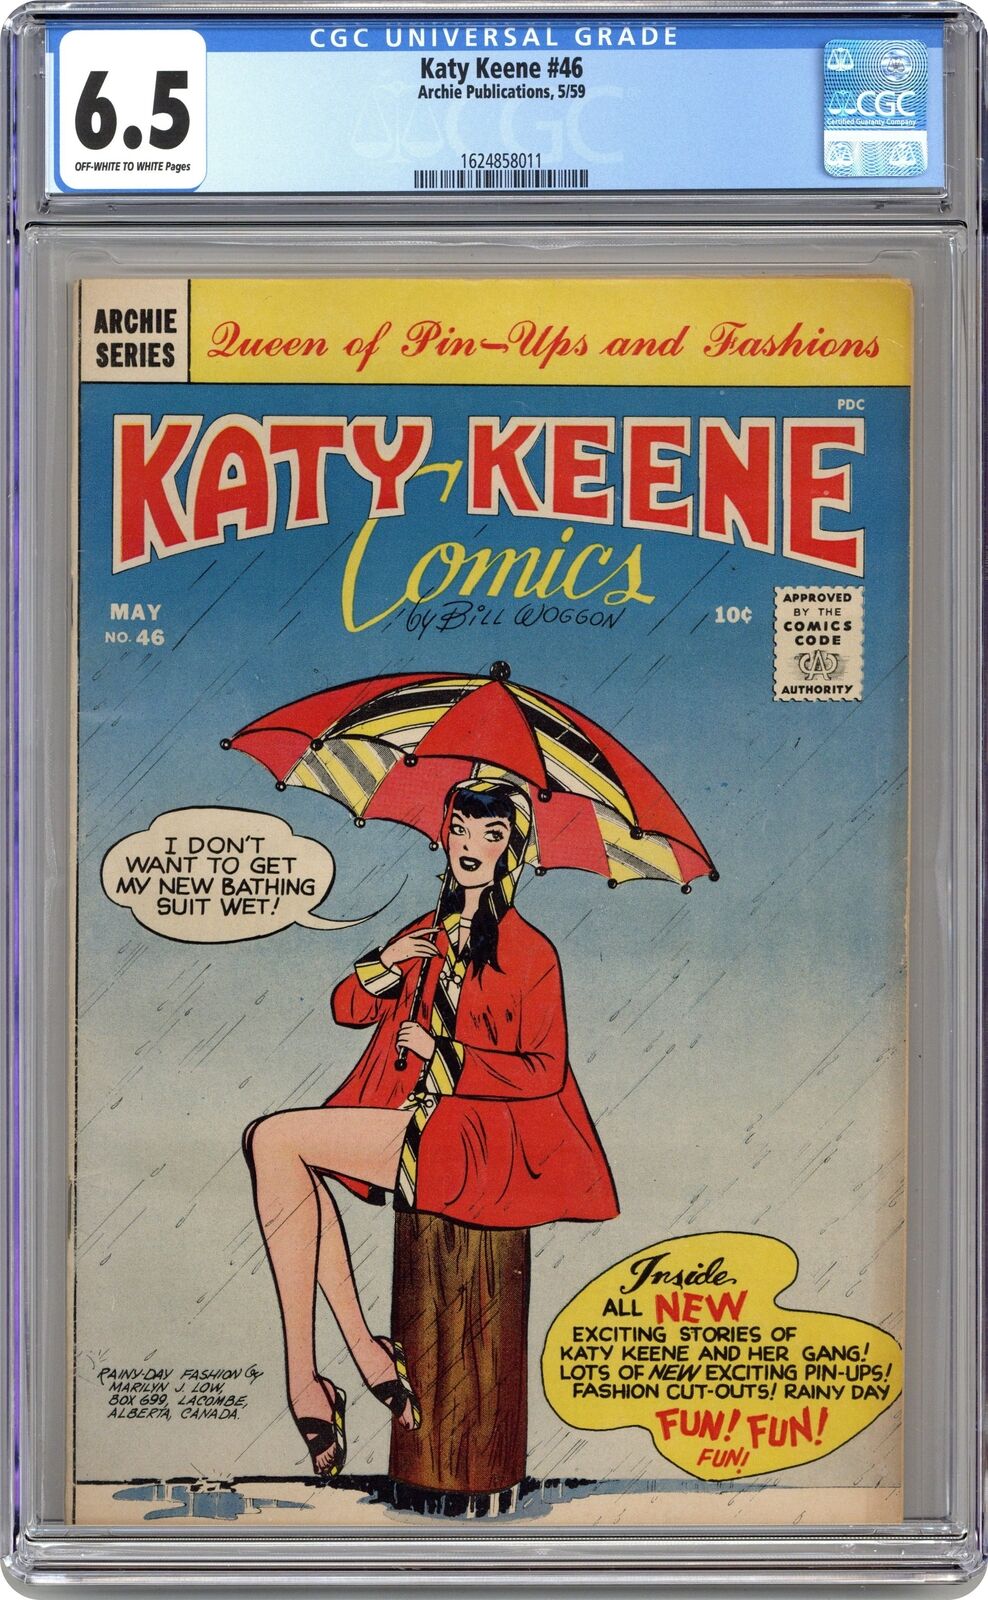 Katy Keene #46 CGC 6.5 1959 1624858011